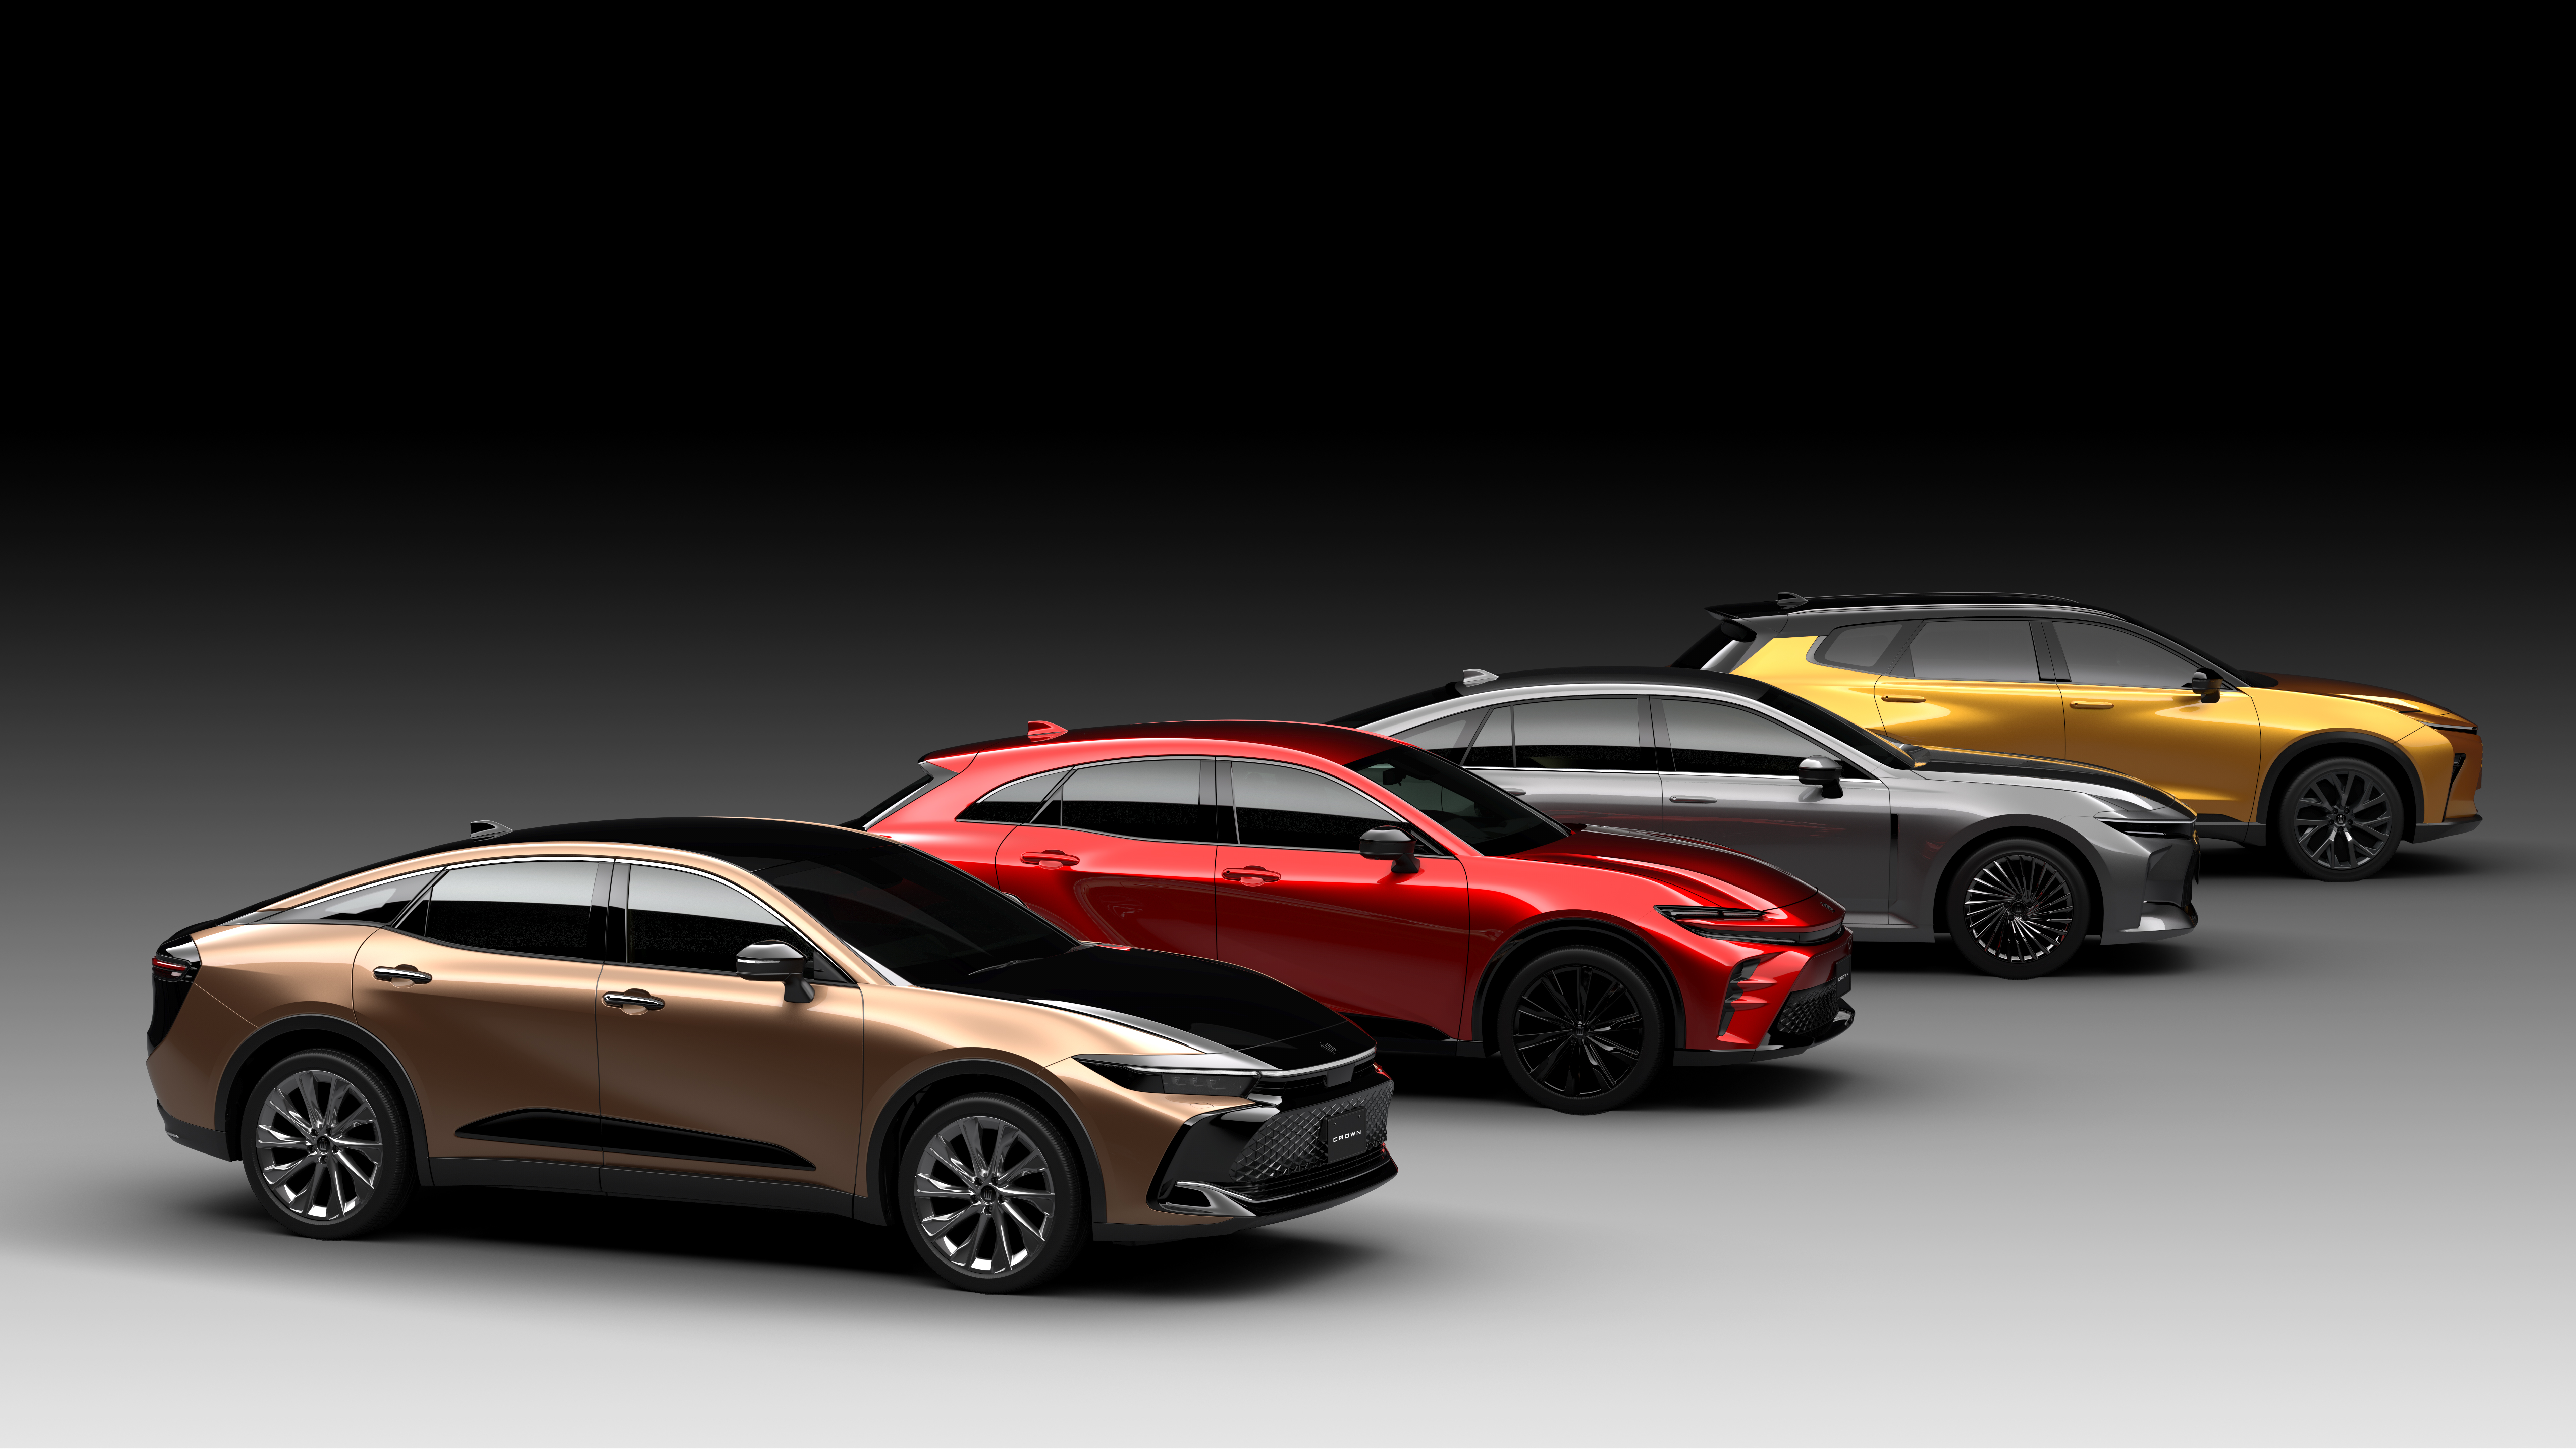 阔别多年回归！第十六代 Toyota Crown 跨界版全球首发！Sedan、SUV 等概念车齐登场；Crown 重新定位成子品牌